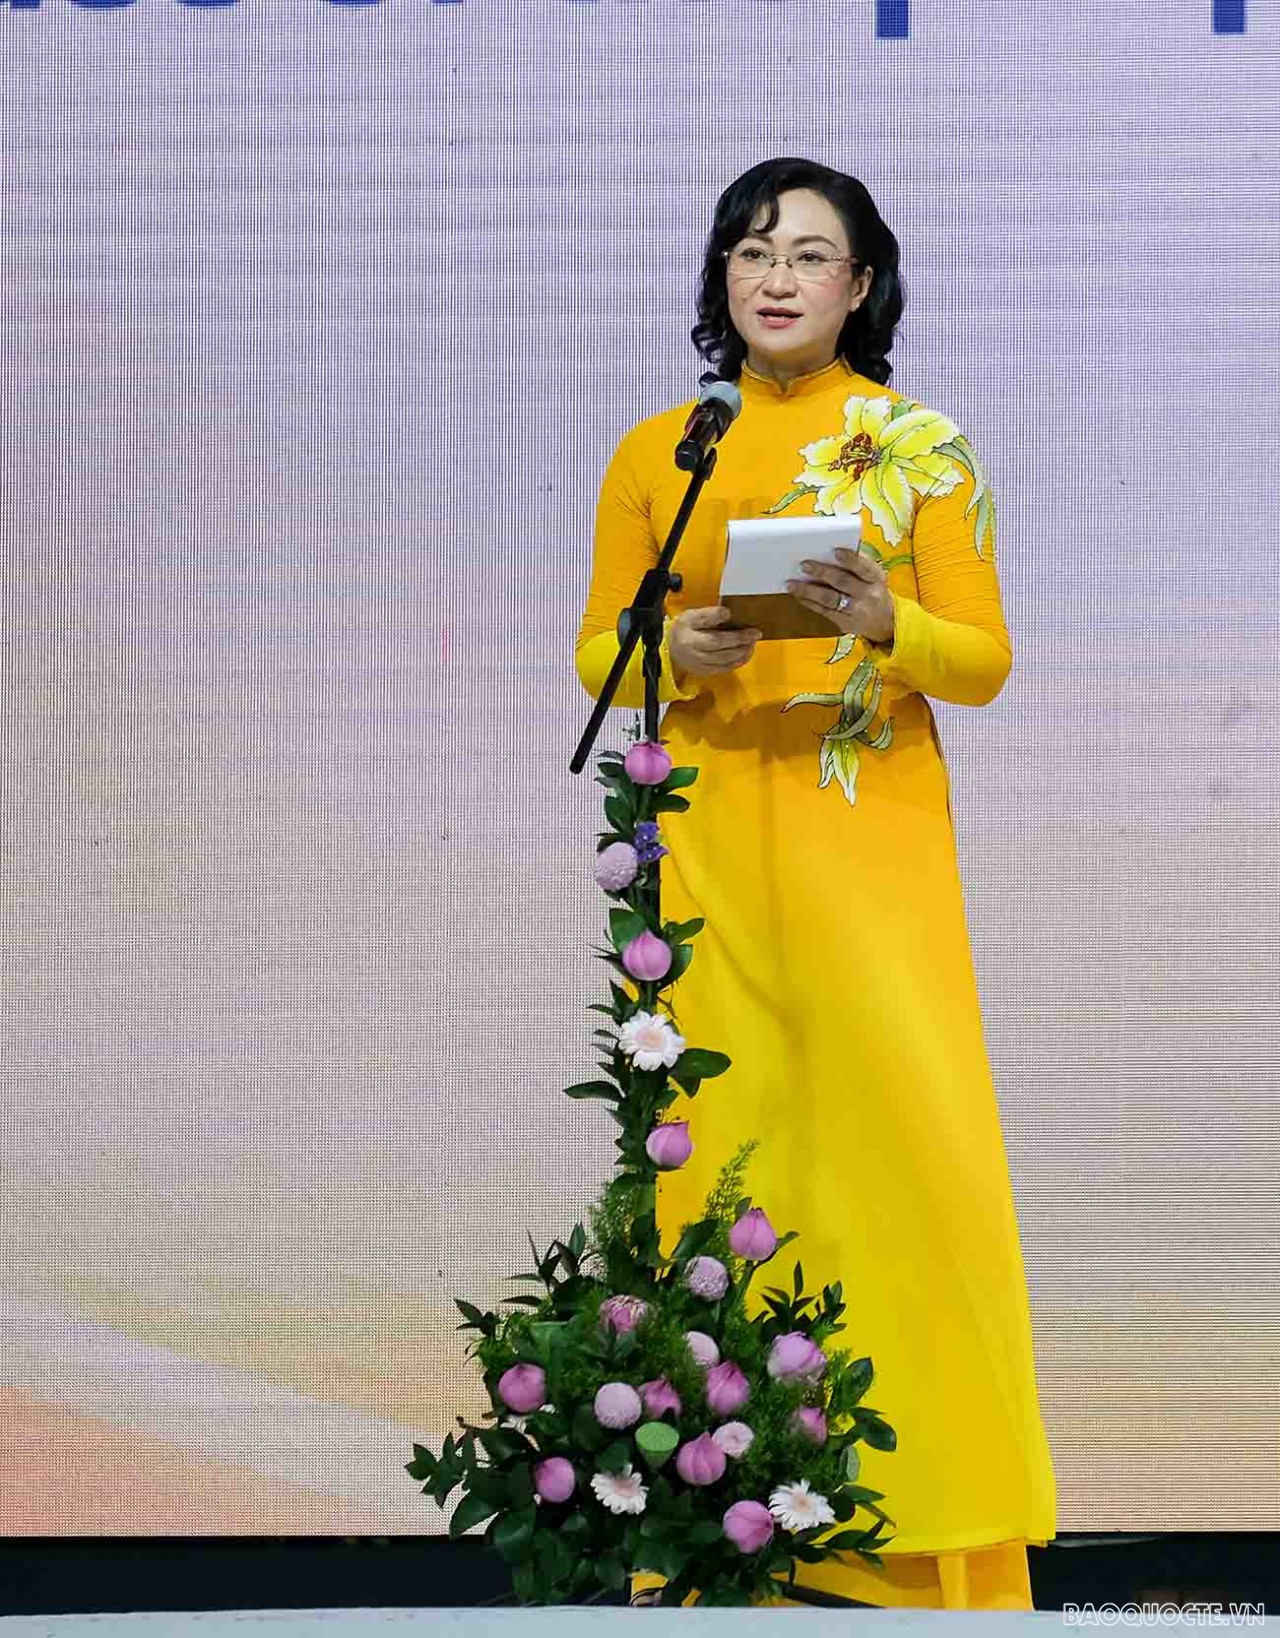 Chiêm ngưỡng hơn 600 tà áo dài trong đêm khai mạc Lễ hội áo dài TP. Hồ Chí Minh 2022